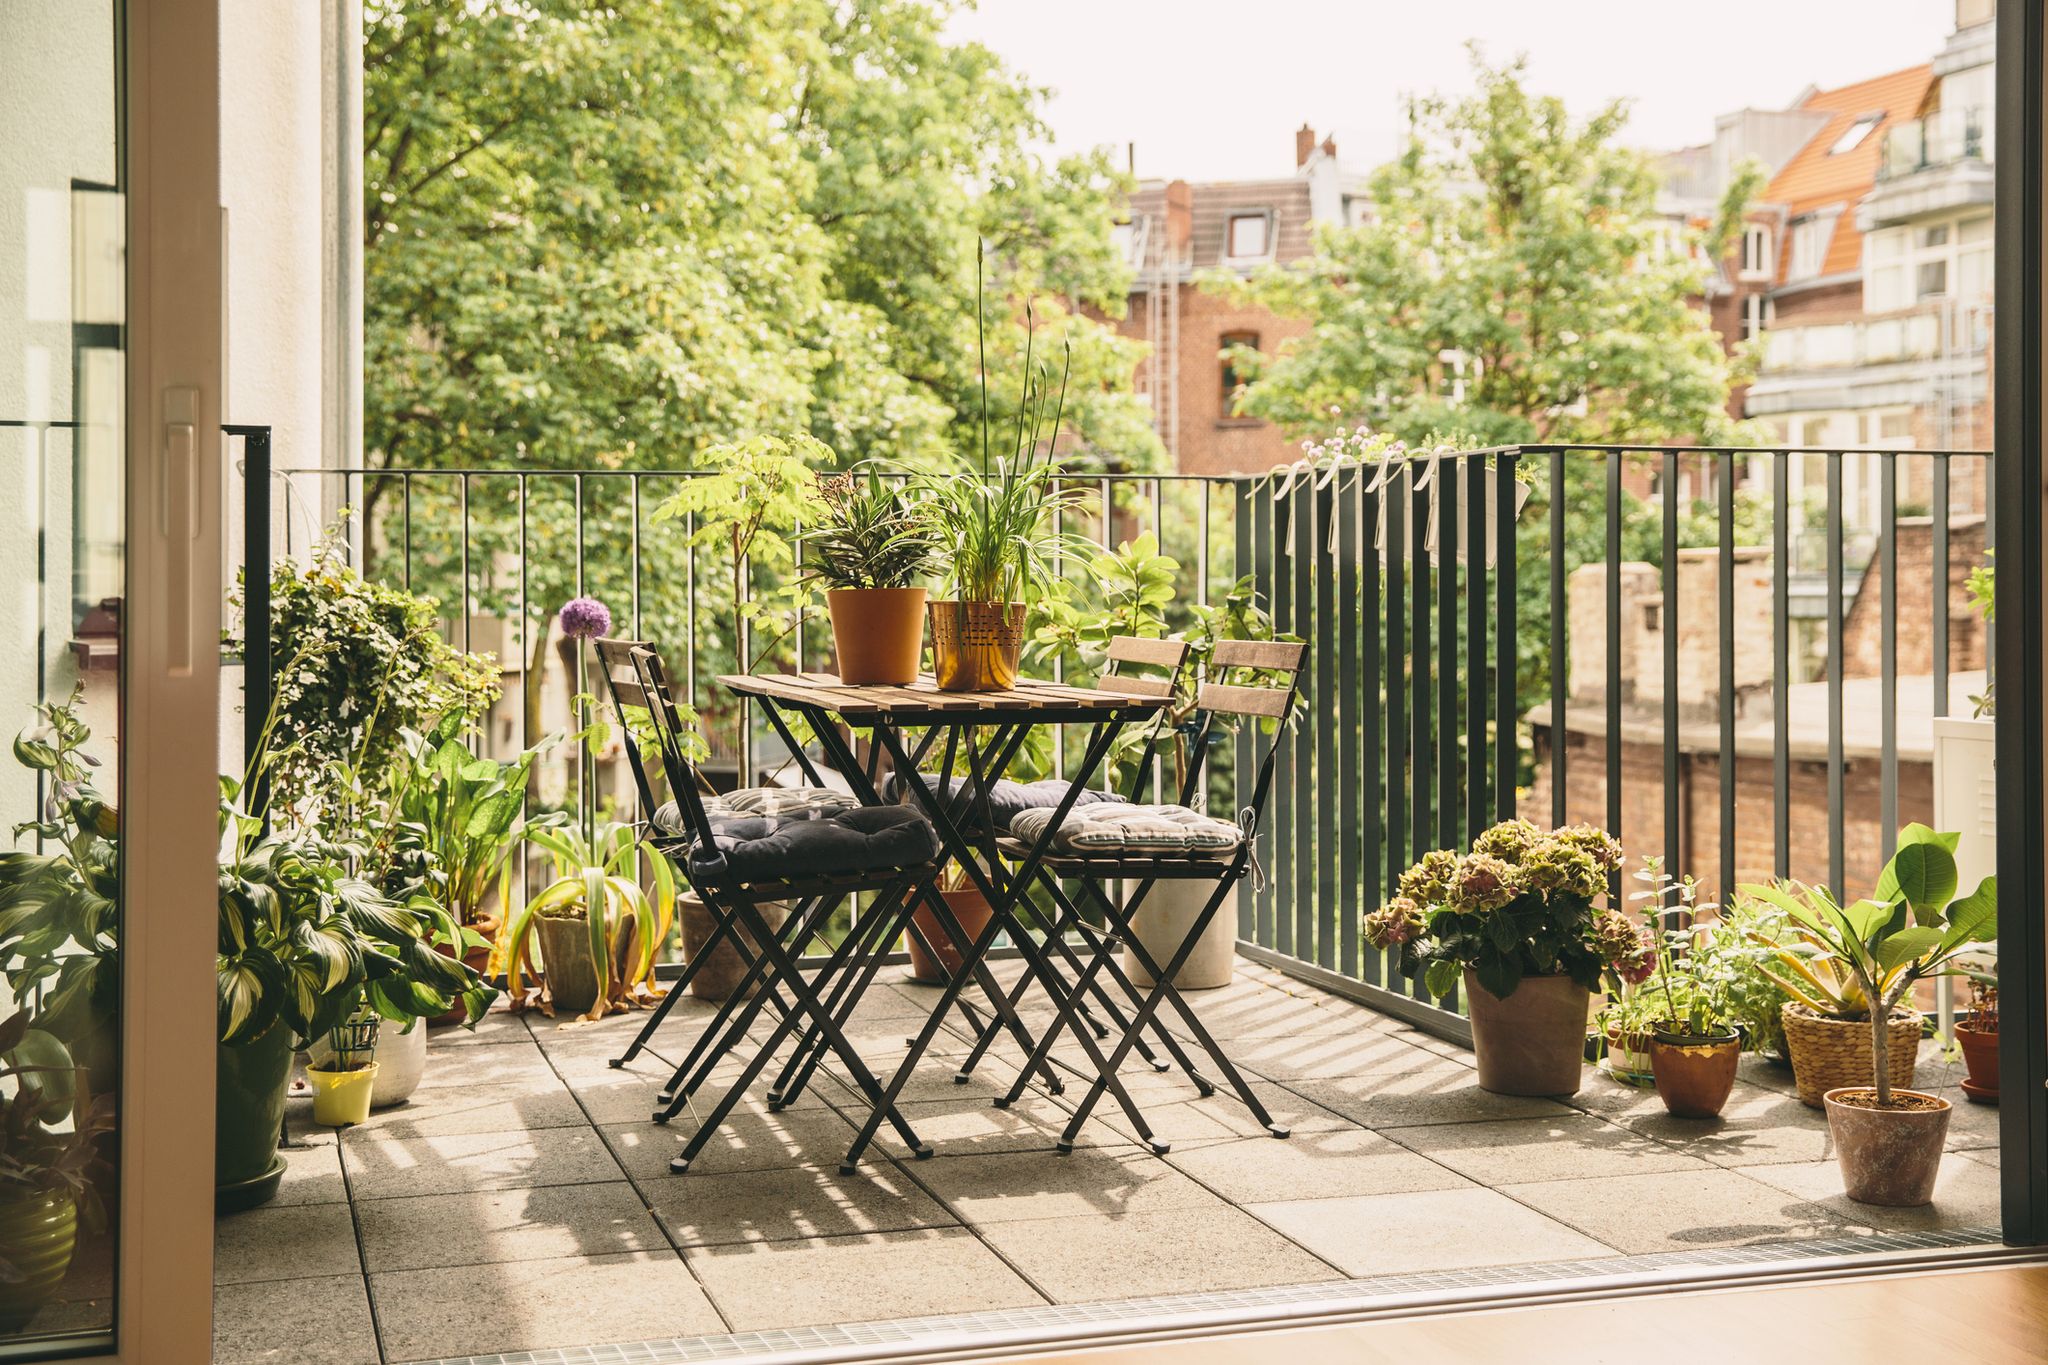 How to plant a balcony garden - expert balcony garden ideas